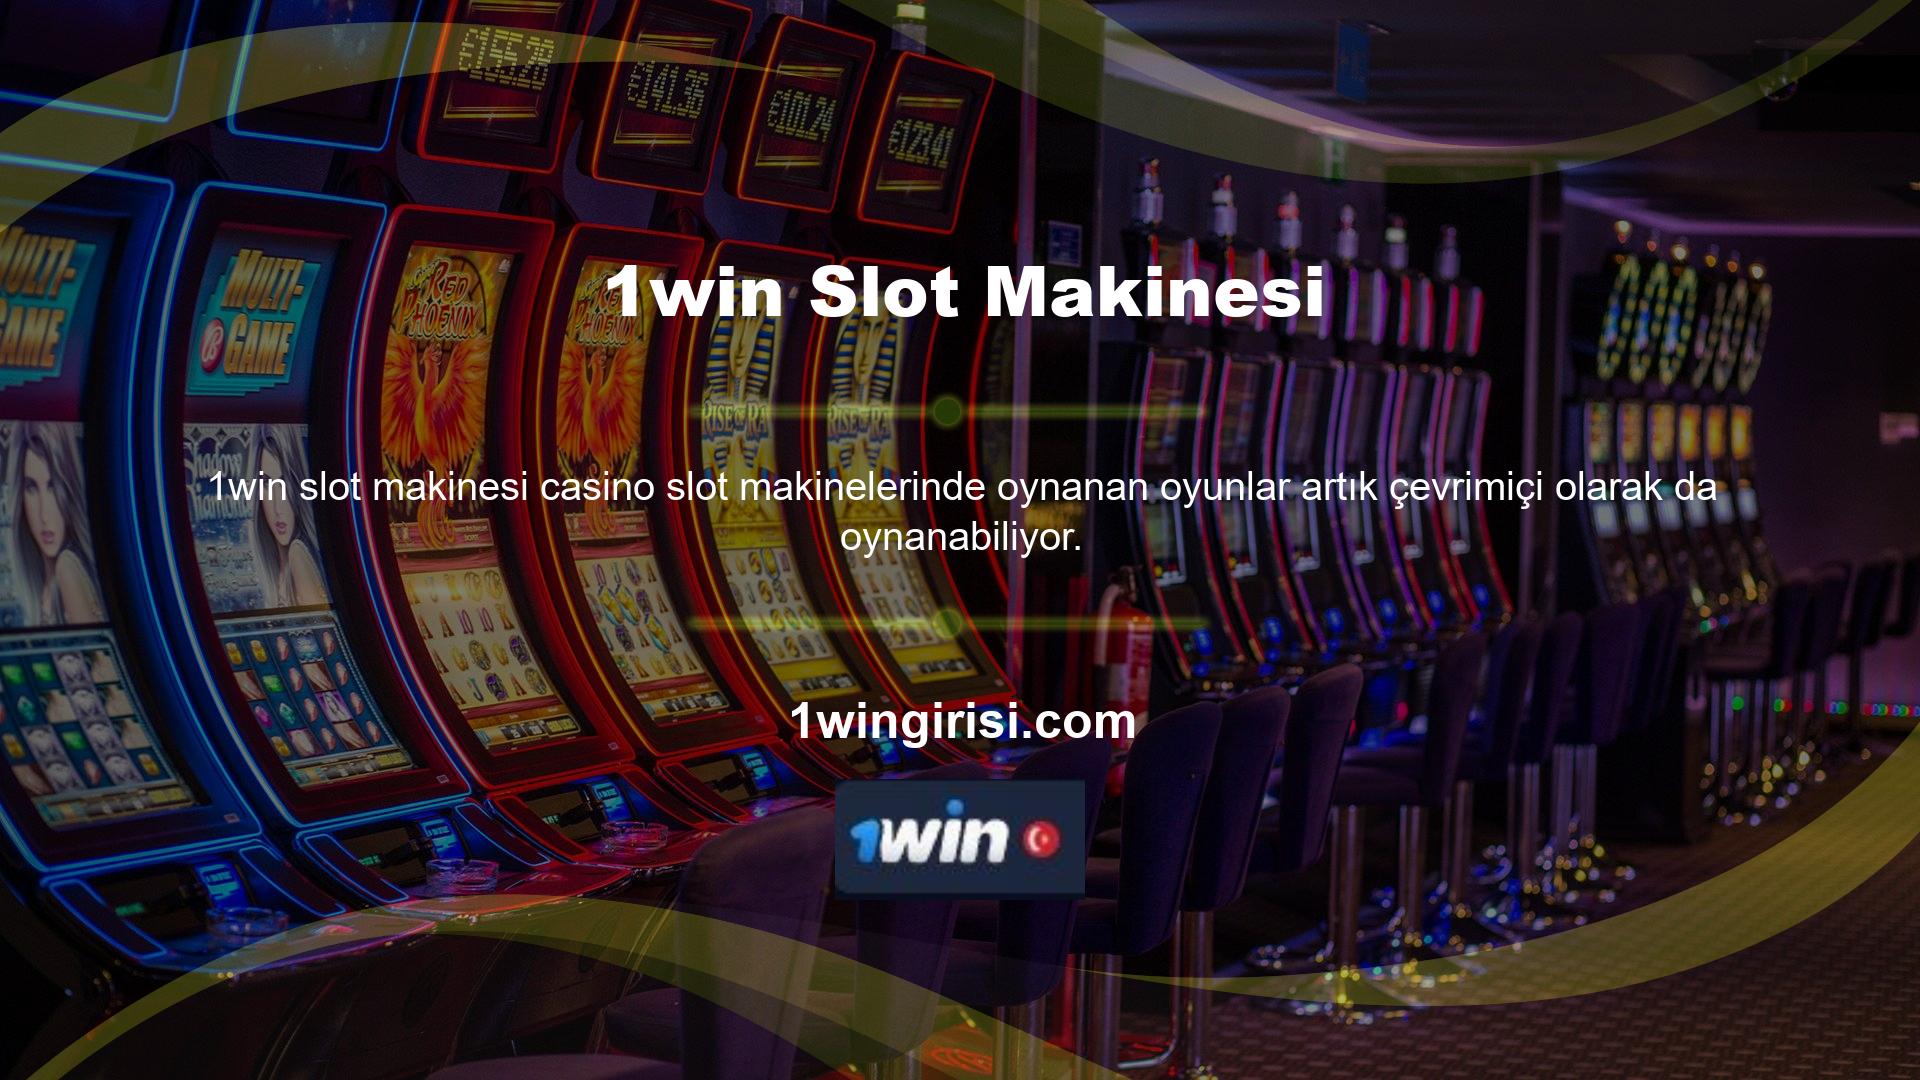 Tüm bu oyun seçeneklerini 1win Casino hizmetinin “Ücretsiz Oyna” seçeneğinde değerlendirebilirsiniz